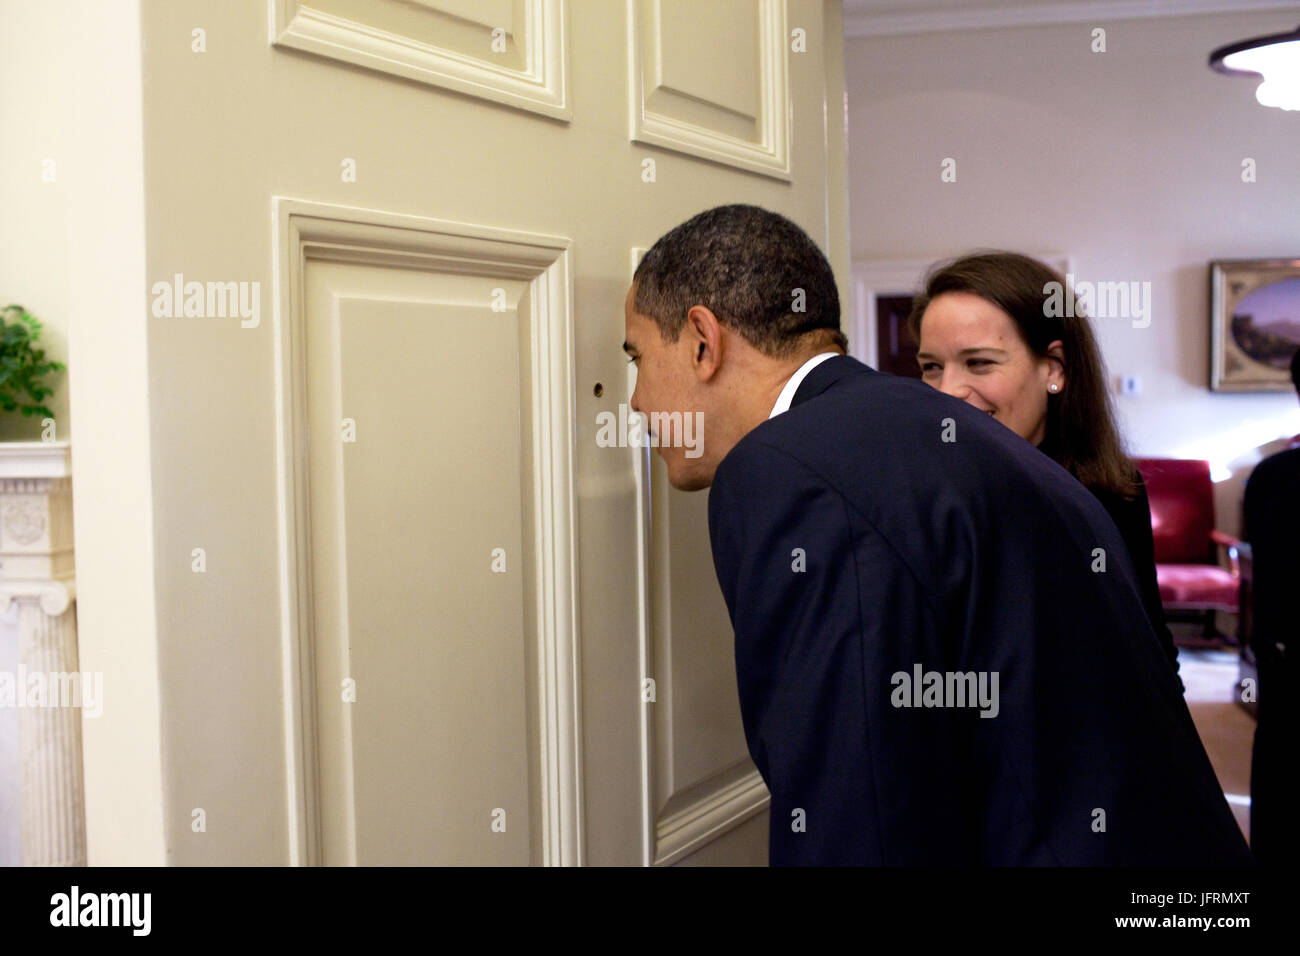 Le président Barack Obama regarde à travers le judas de la porte du bureau ovale comme son secrétaire personnel Katie Johnson montres 3/12/09. Photo Officiel de la Maison Blanche par Pete Souza Banque D'Images